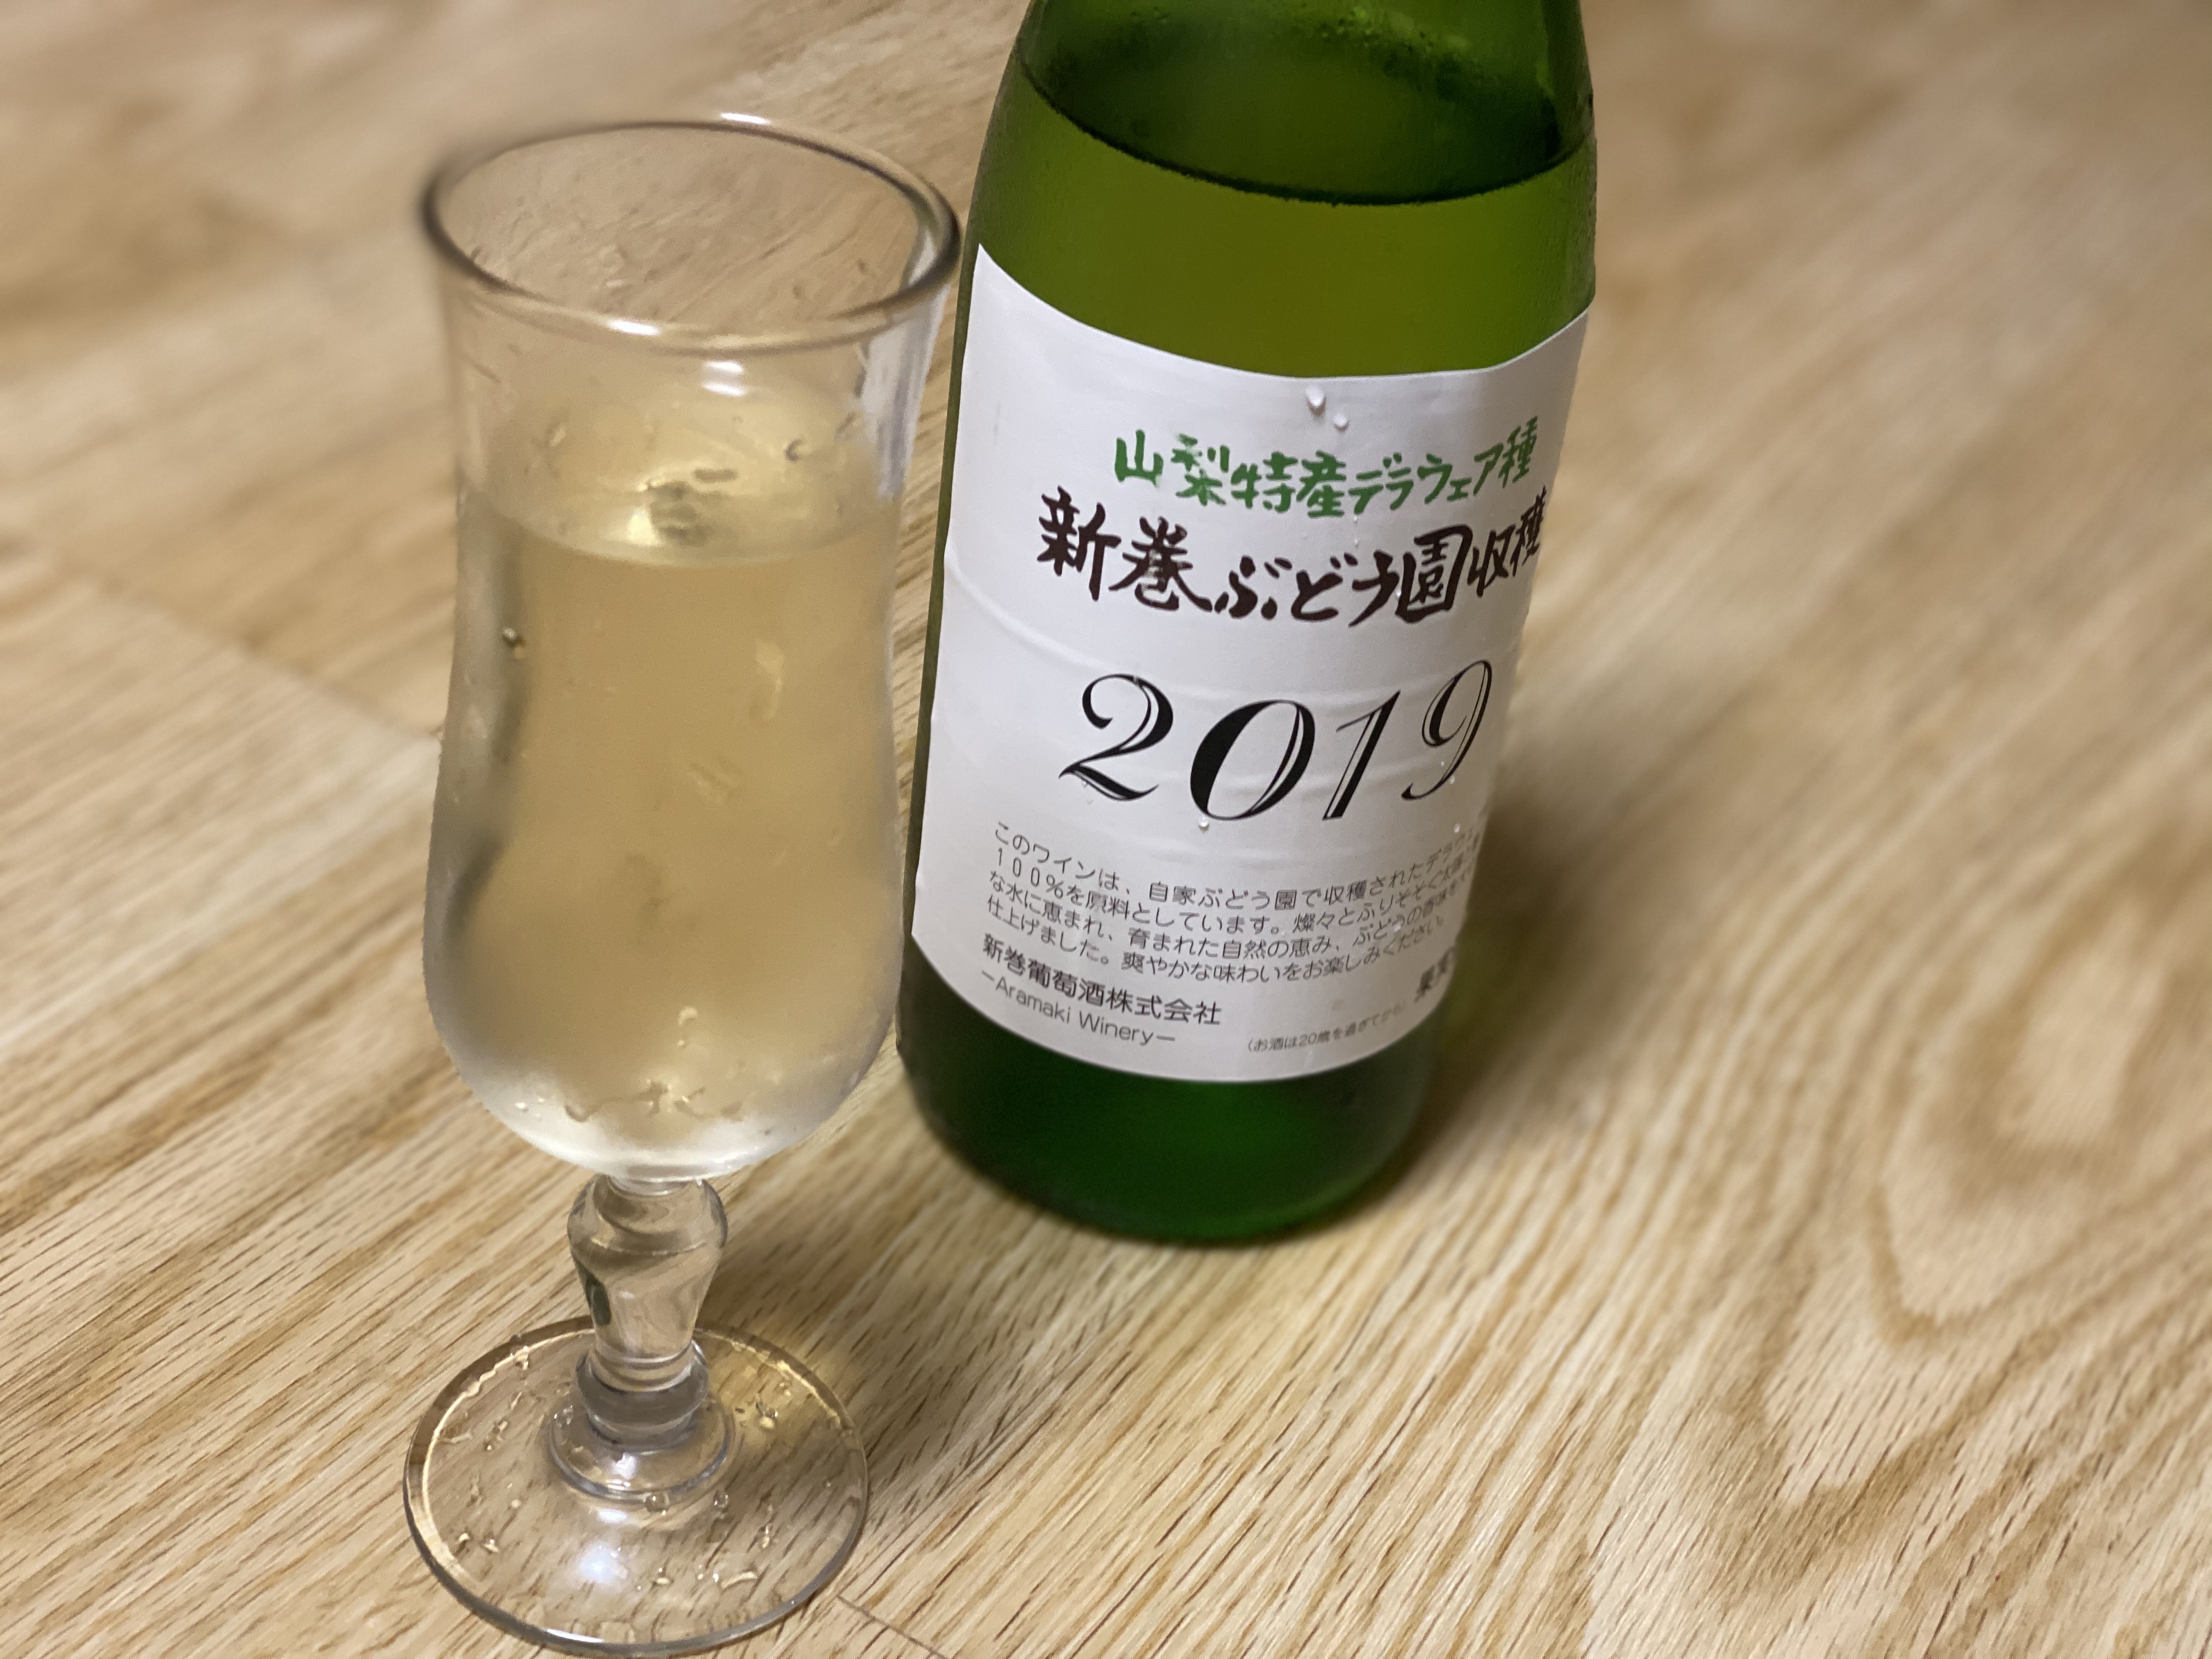 成城石井で購入 白ワインの 新巻ワイン19 Topinade